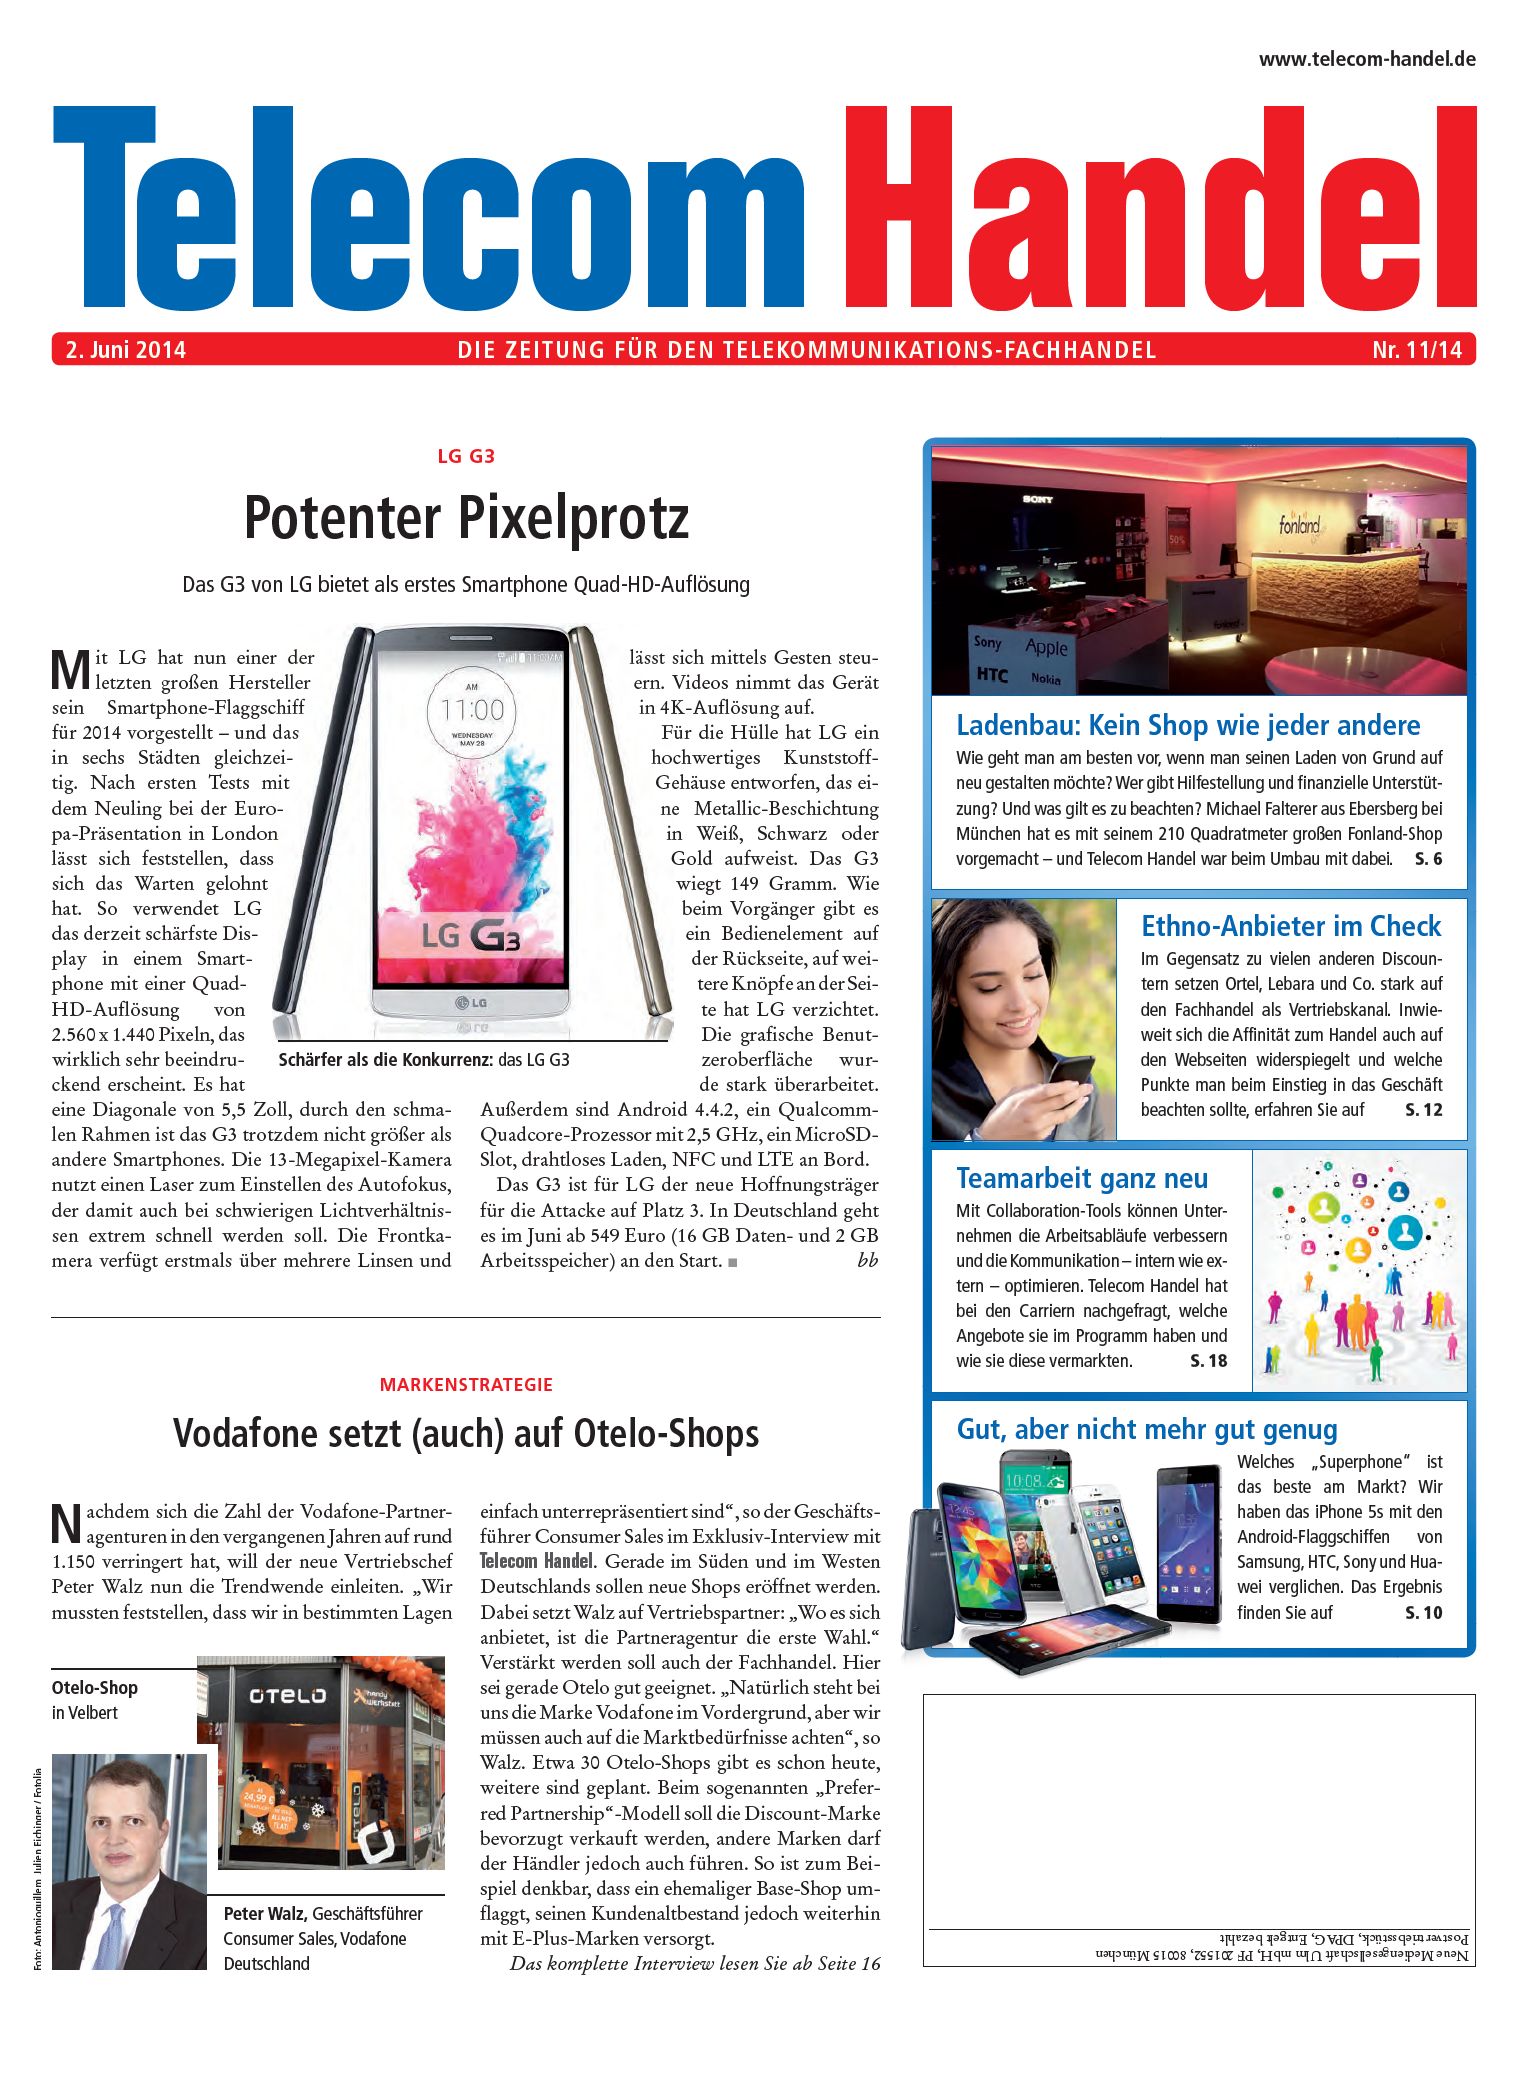 Telecom Handel Ausgabe 11/2014